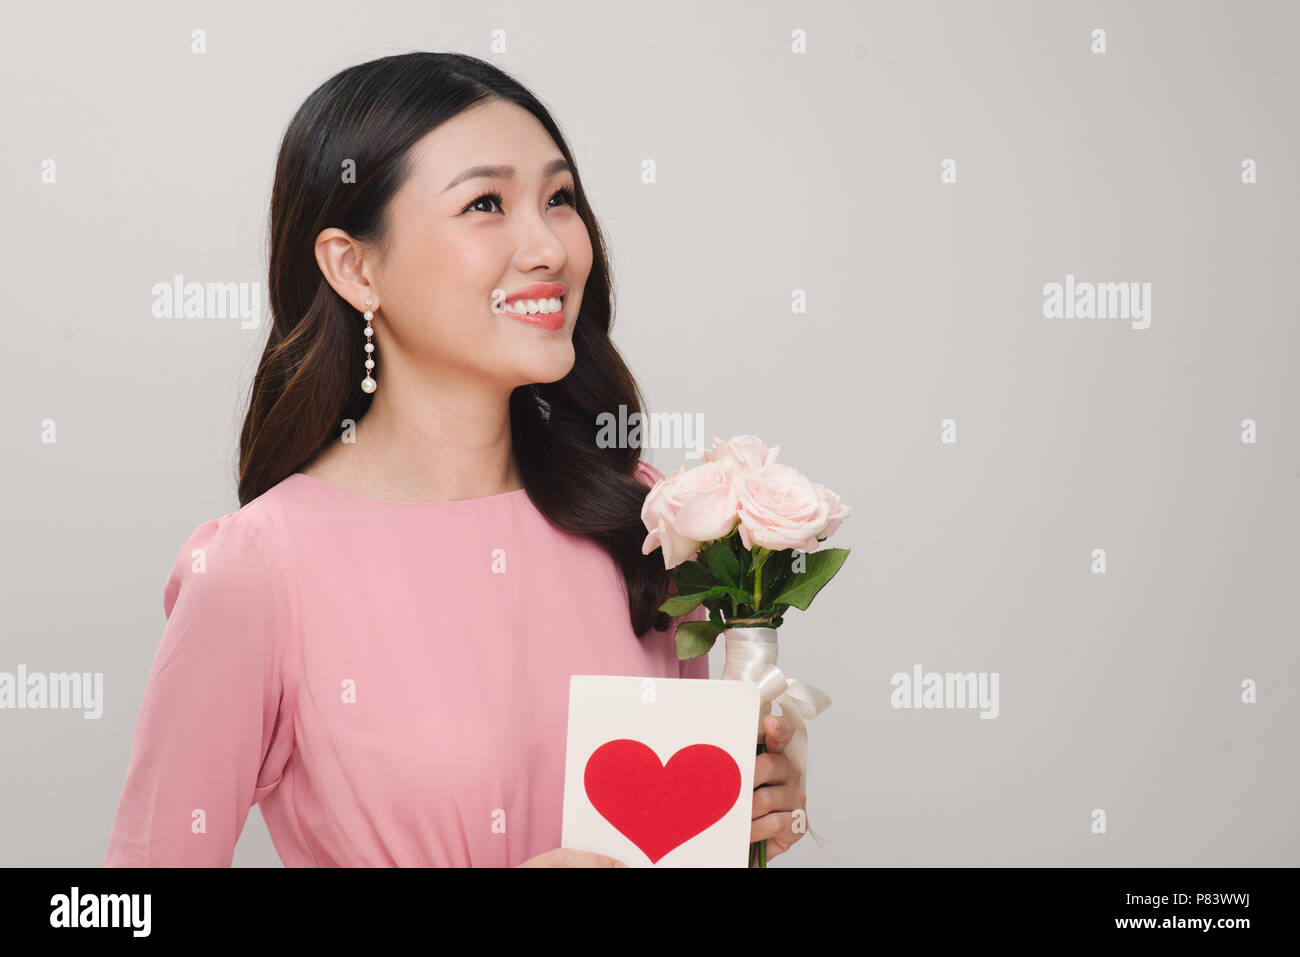 Junge schöne lächelnde Frau mit Blumenstrauß aus wunderschönen Rosen Blumen, Postkarte auf weißem Hintergrund. St. Valentines Tag oder Internationalen W Stockfoto